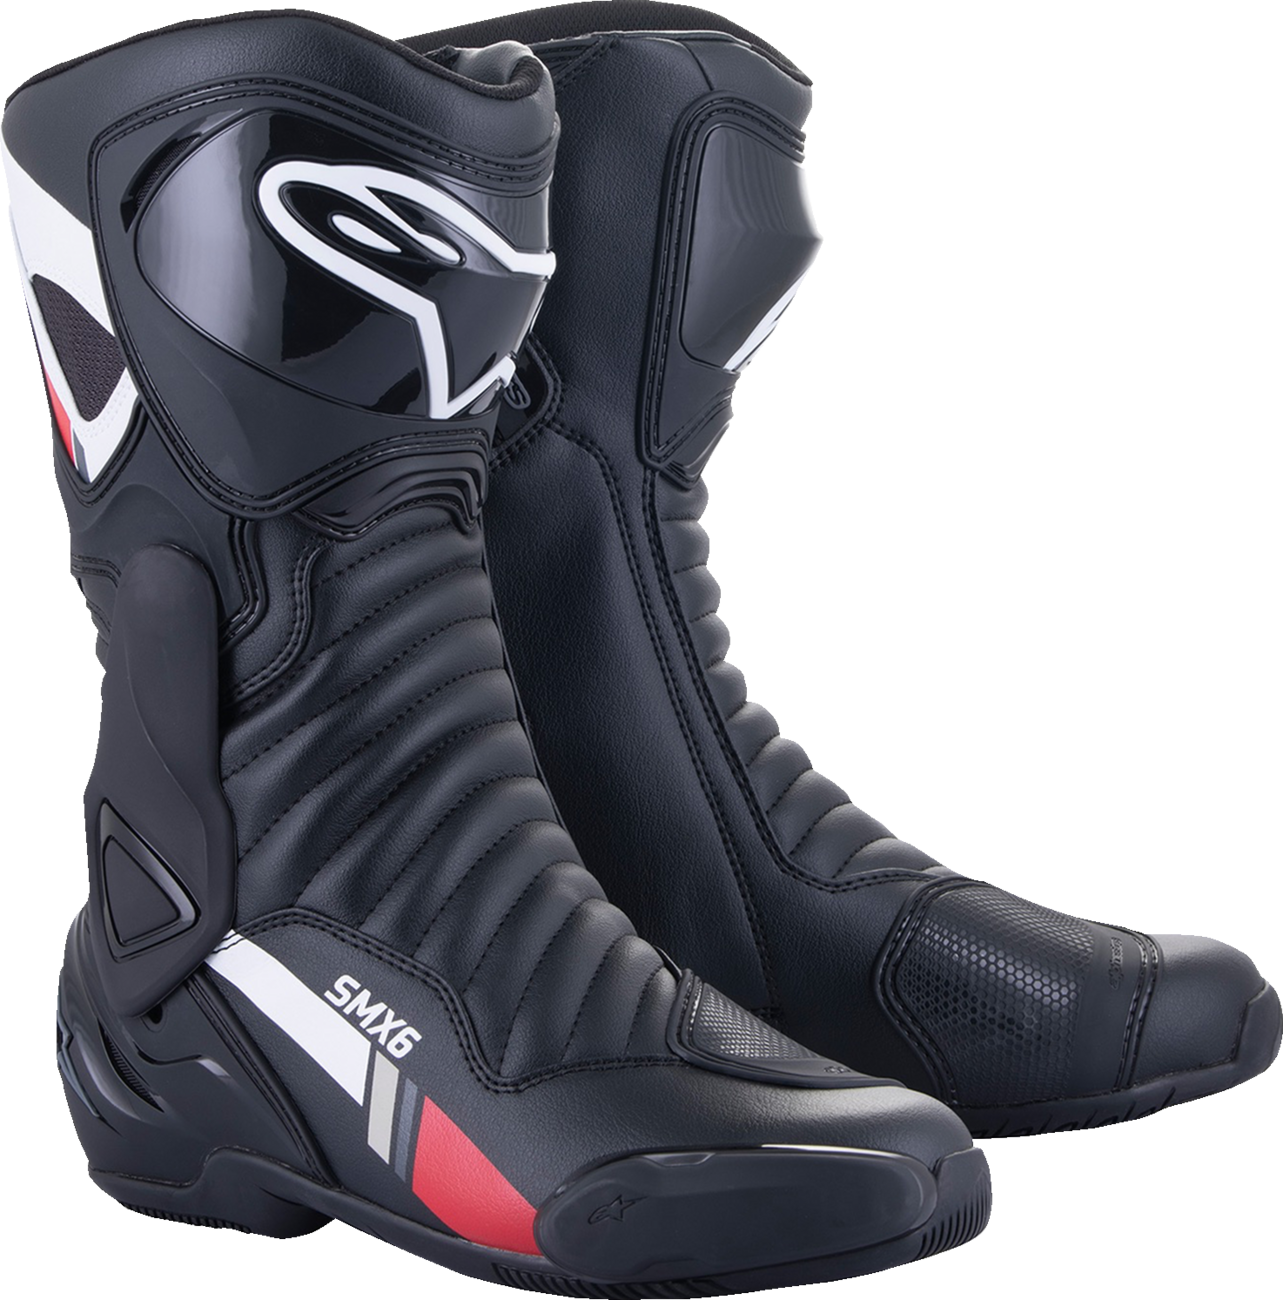 ALPINESTARS SMX-6 v2 Boots - Black/White/Gray - US 9.5 / EU 45 2223017-153-45